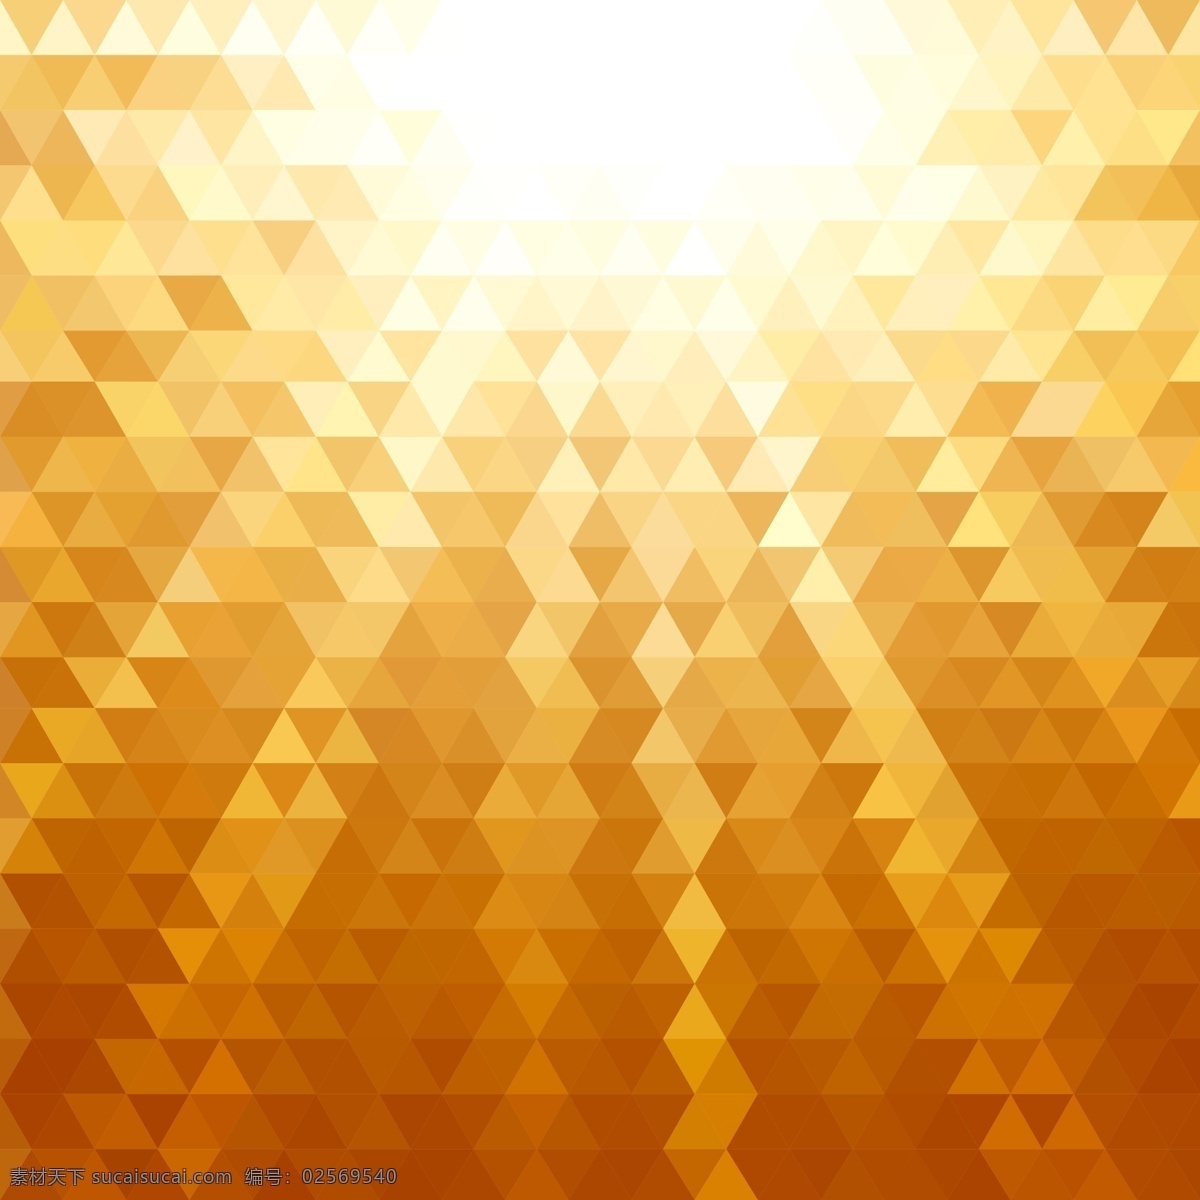 橙色 多边形 高光 线条 溶 图 背景 矢量 矢量素材 设计素材 背景素材